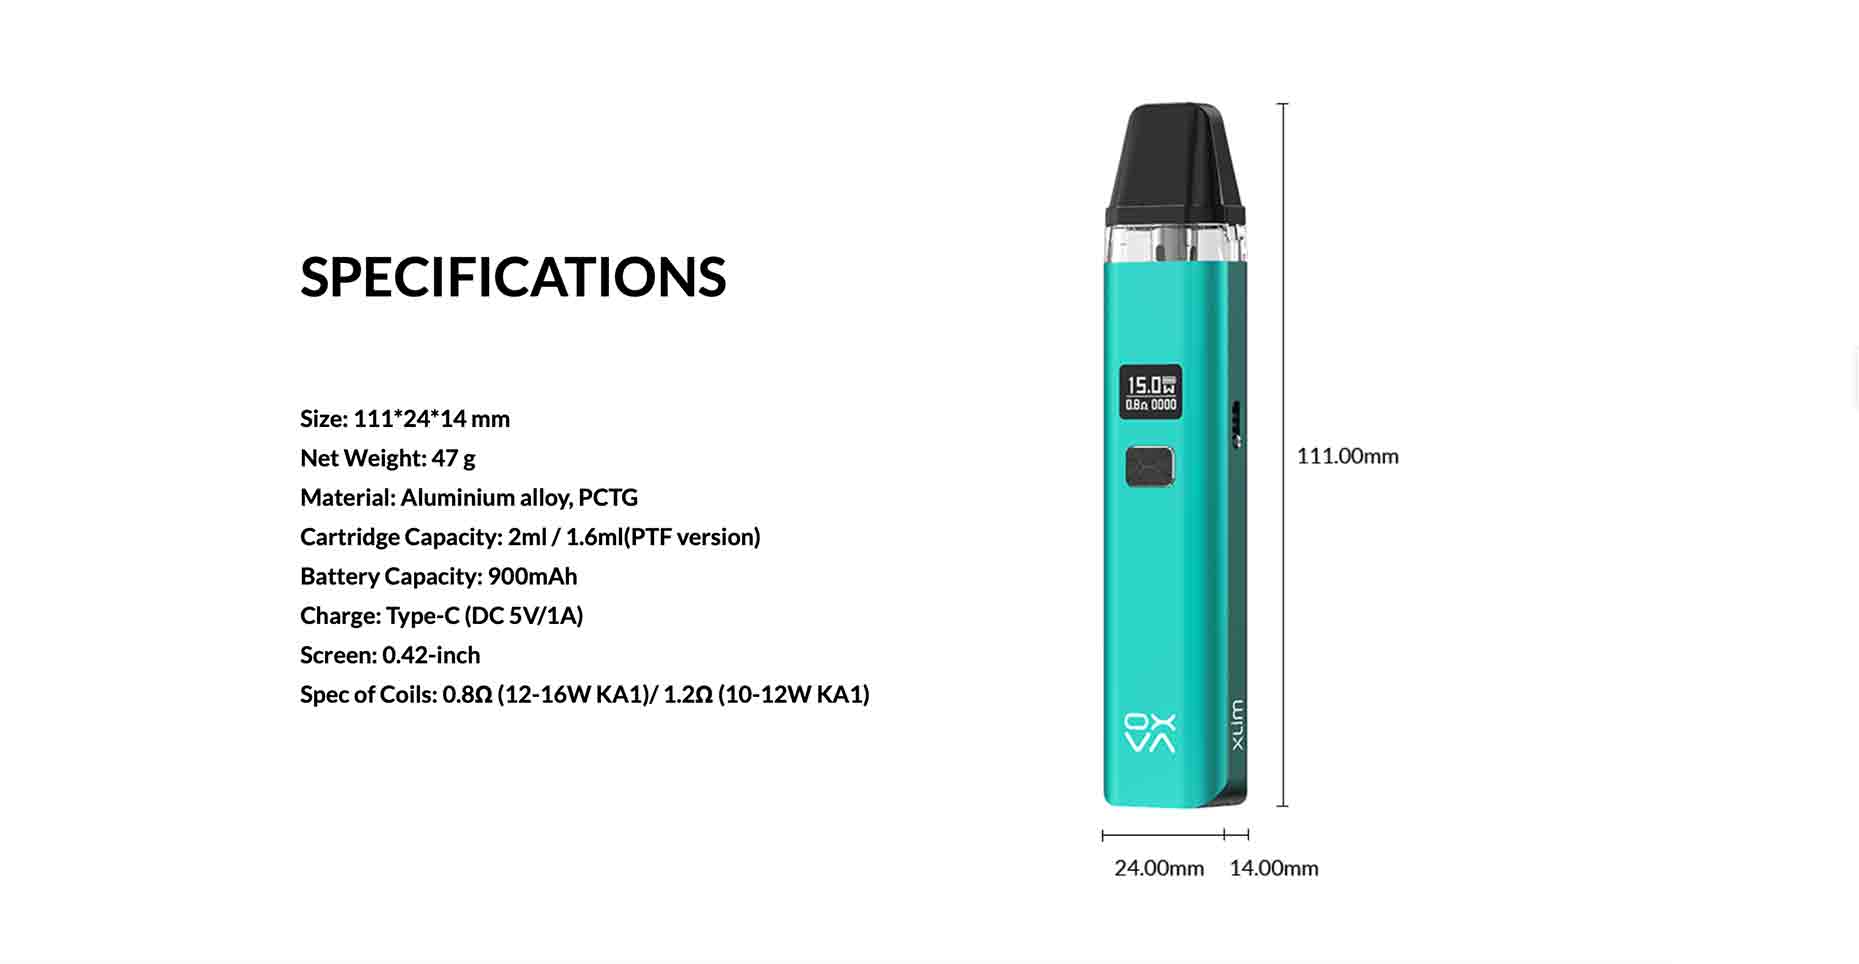 Xlim Vape Pod Kit by OXVA Specifications